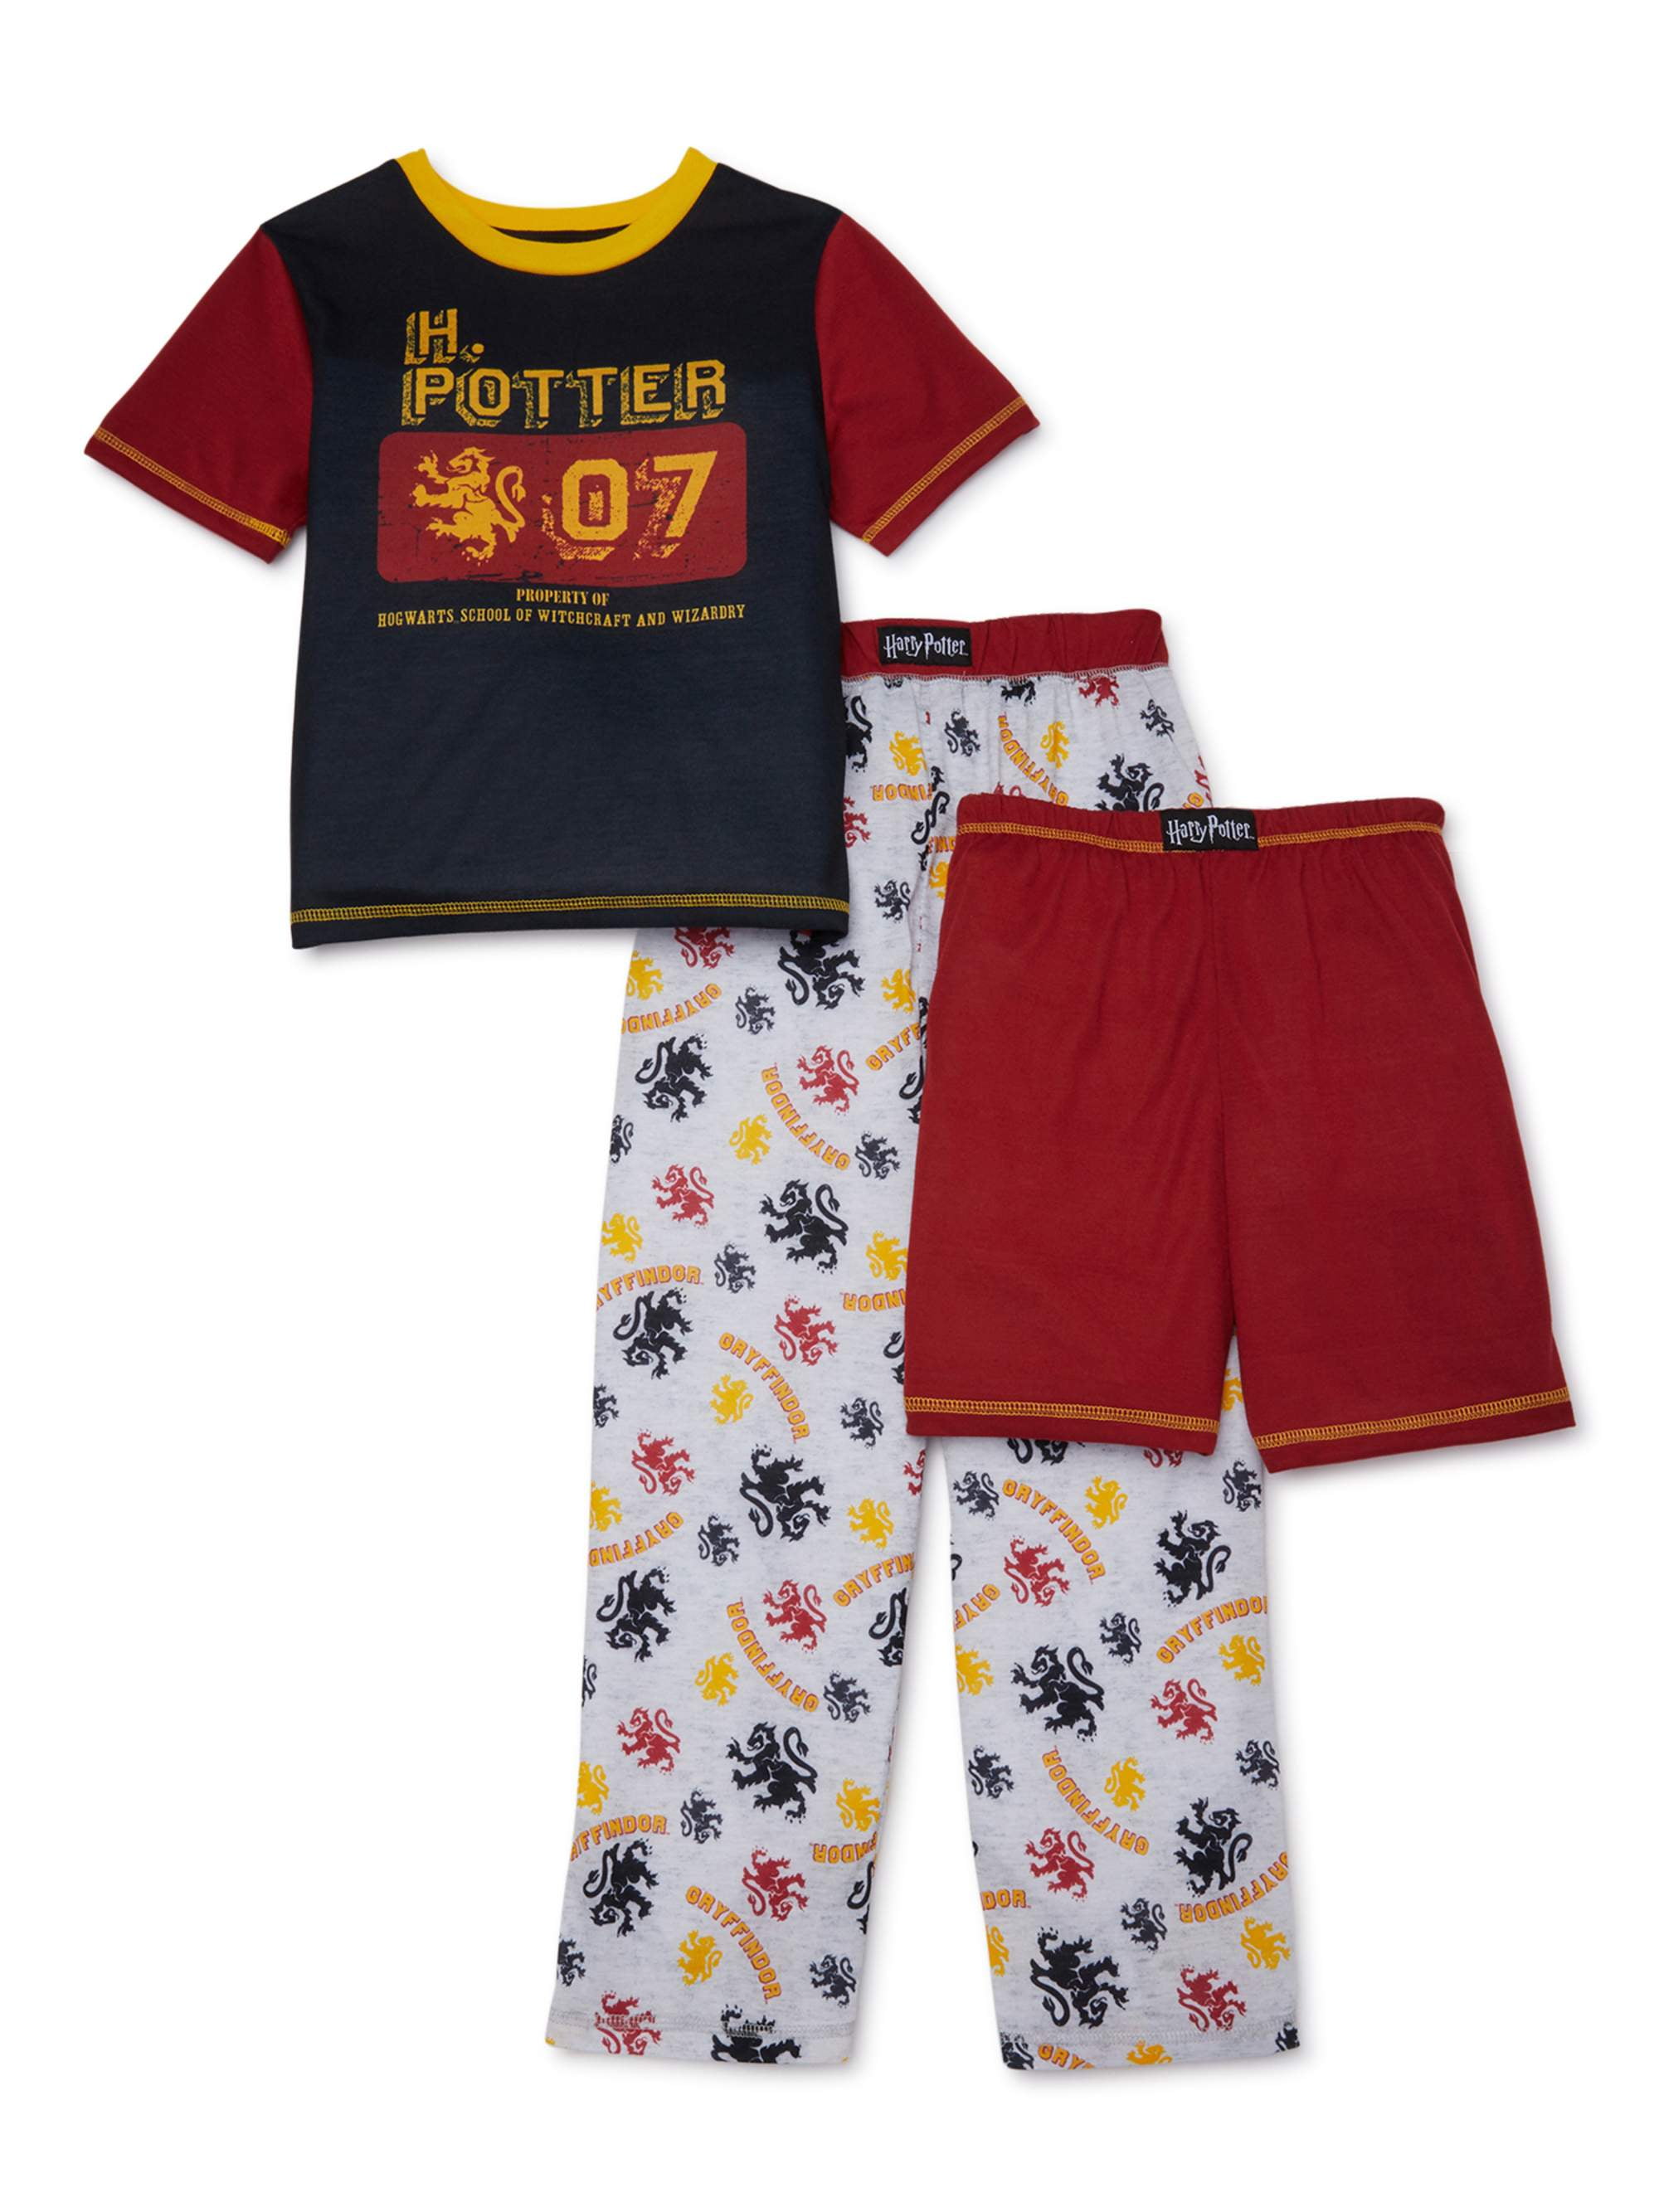 Harry Potter PyjamasKids Hogwarts Short PJsBoys Harry Potter Pyjama Set